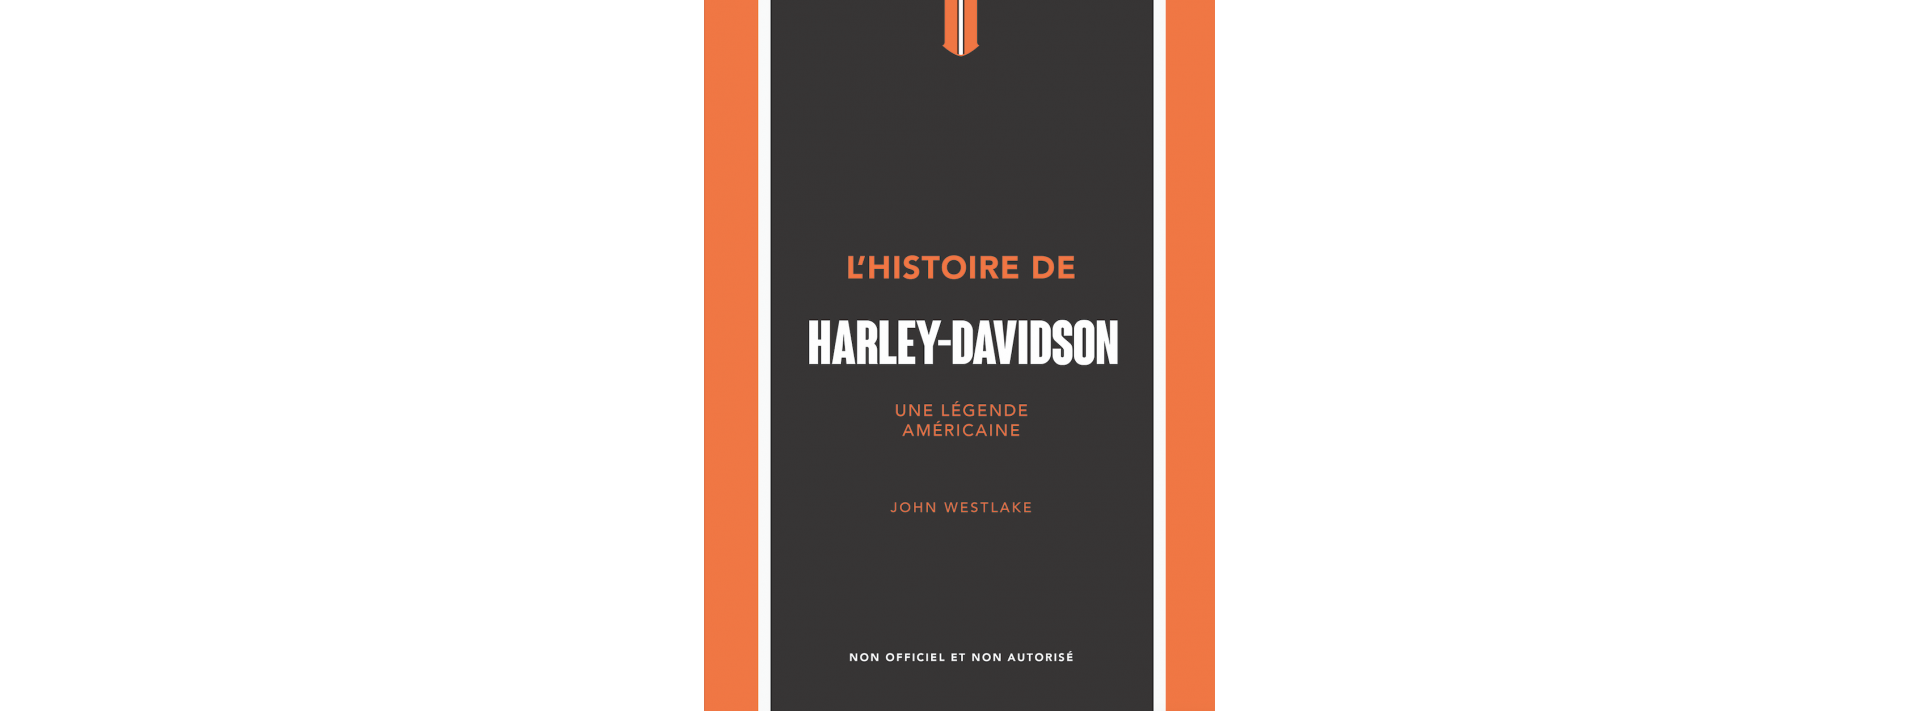 Livre Harley Davidson